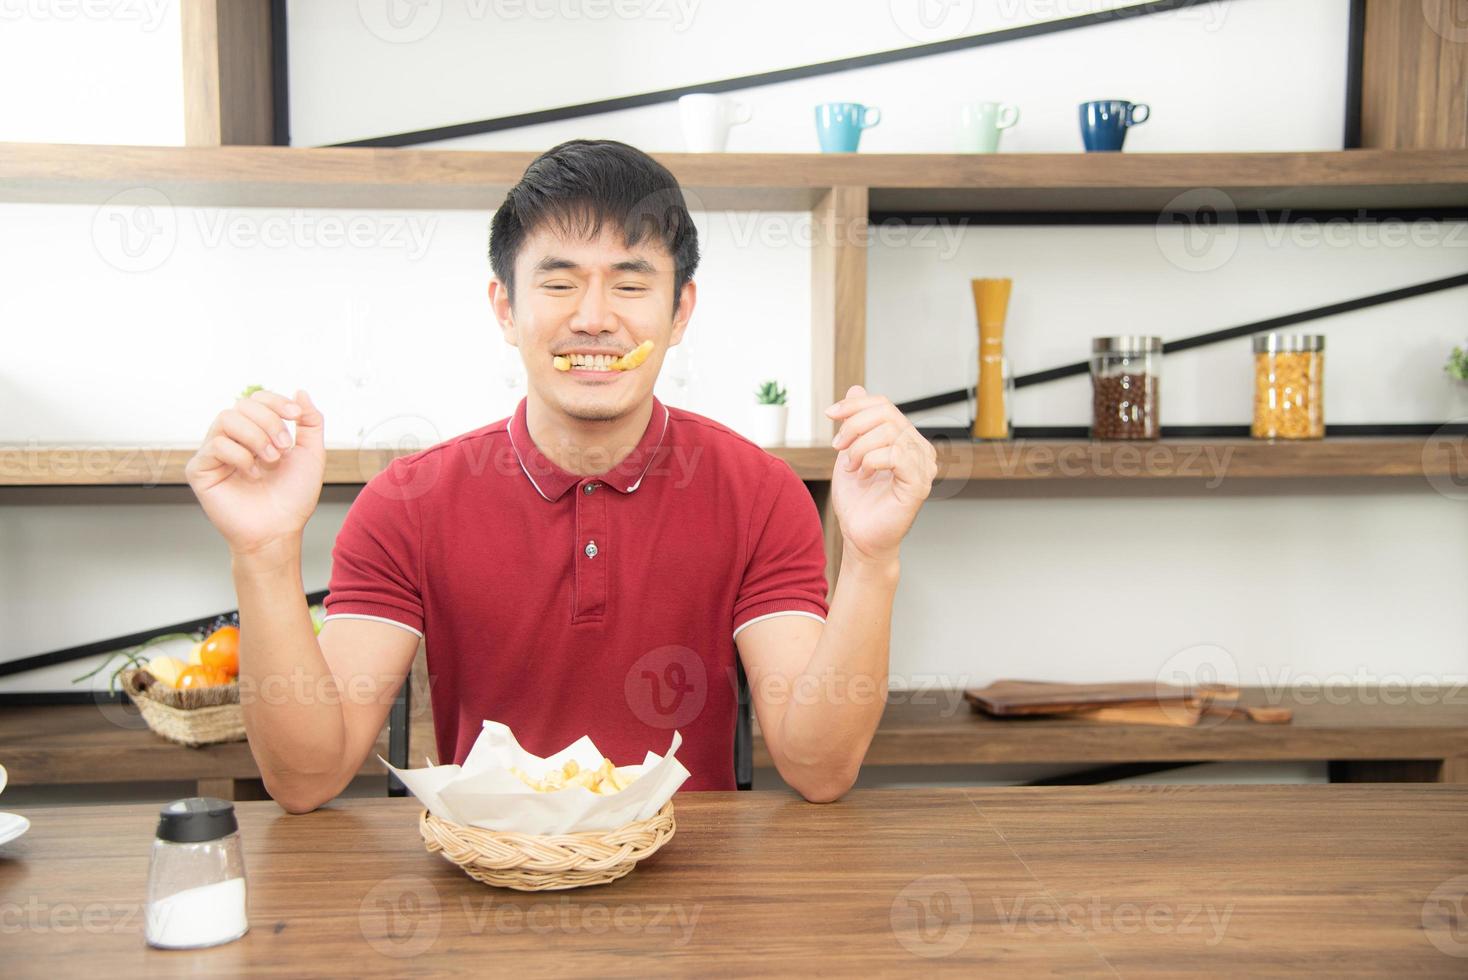 aziatische jonge man met een casual rood t-shirt geniet van het ontbijt, het eten van frietjes met een lach. jonge man die eten kookt in de keukenkamer in loftstijl foto